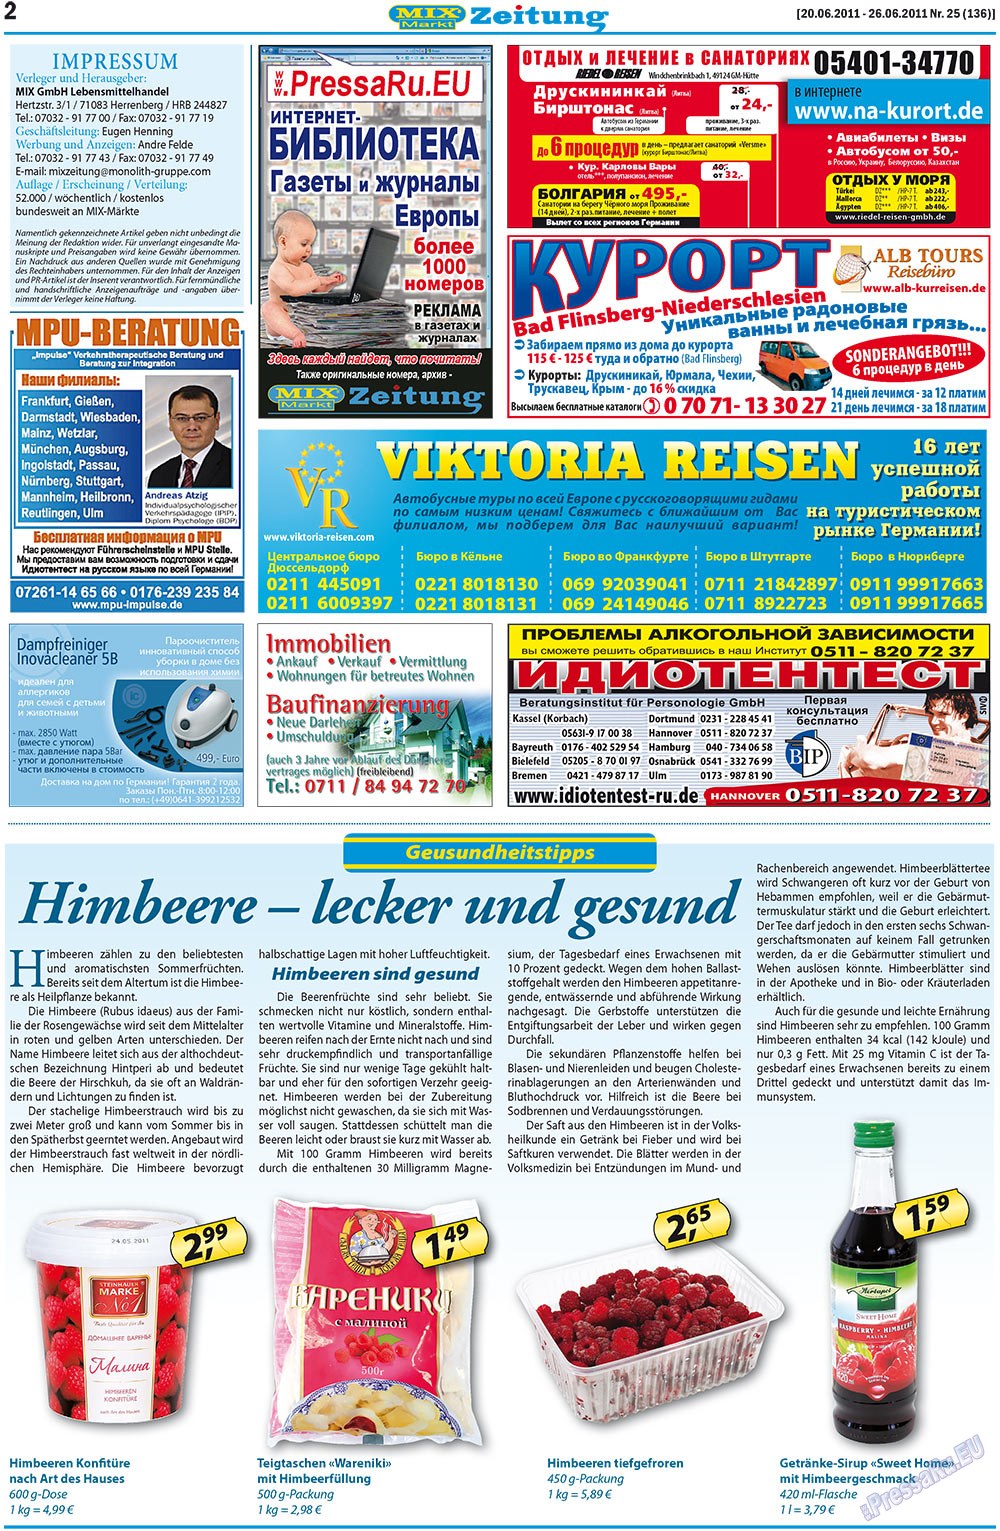 MIX-Markt Zeitung, газета. 2011 №25 стр.2